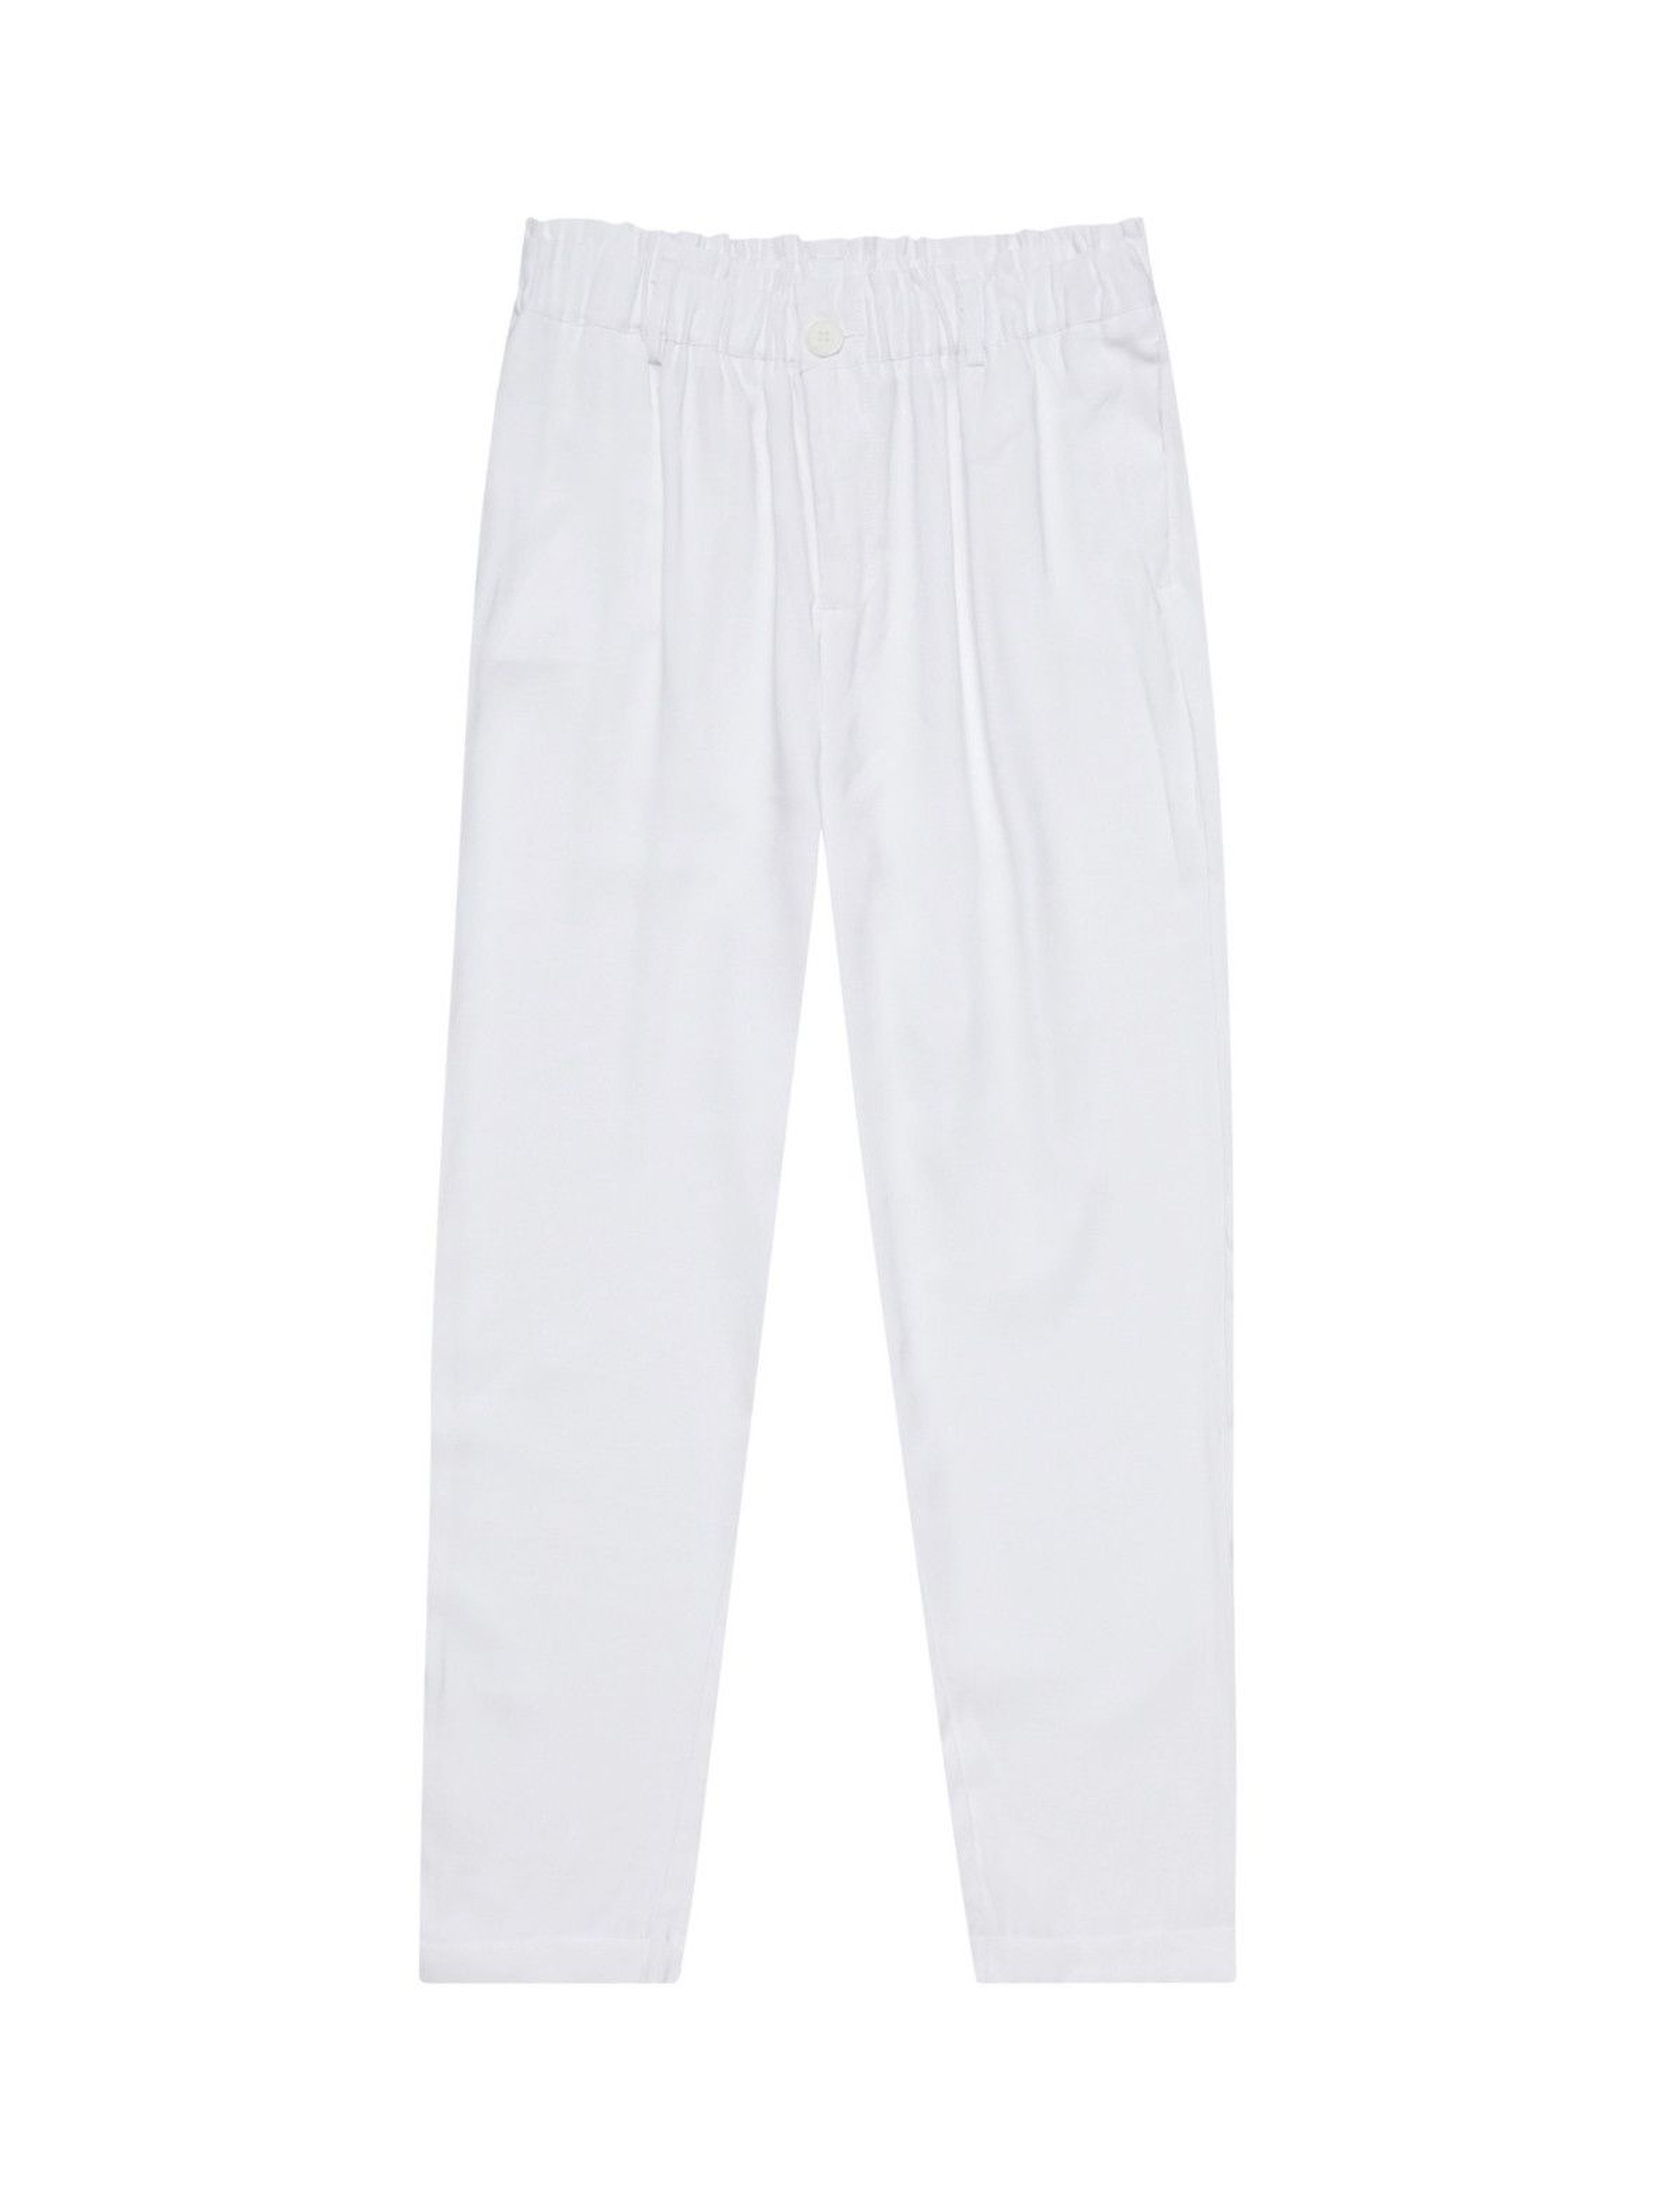 Letnie spodnie z wiskozy białe